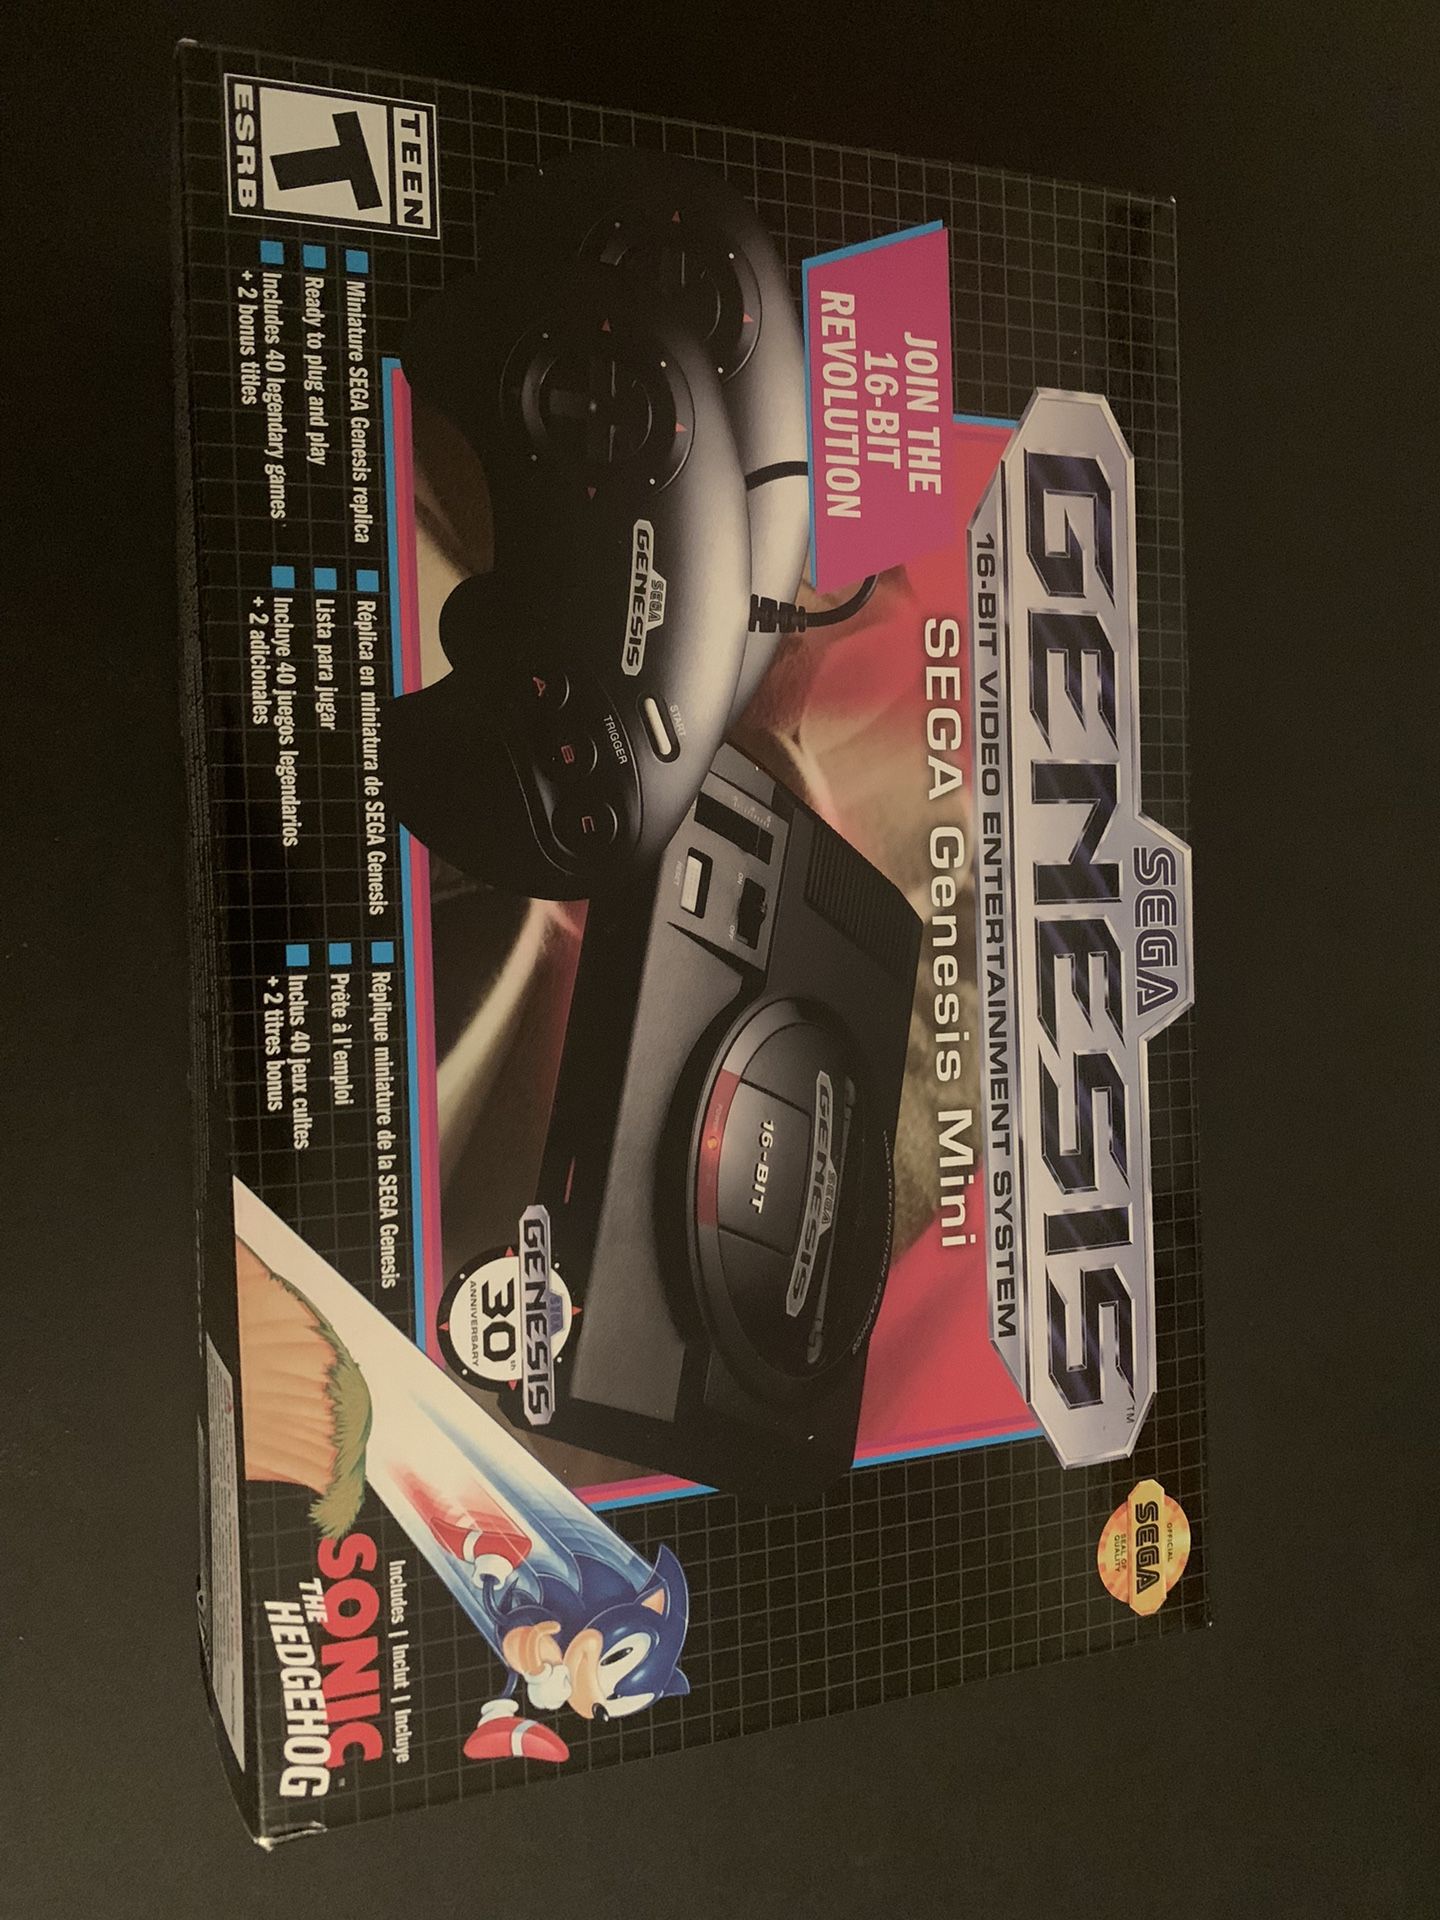 Sega Genesis Mini Classic Edition 